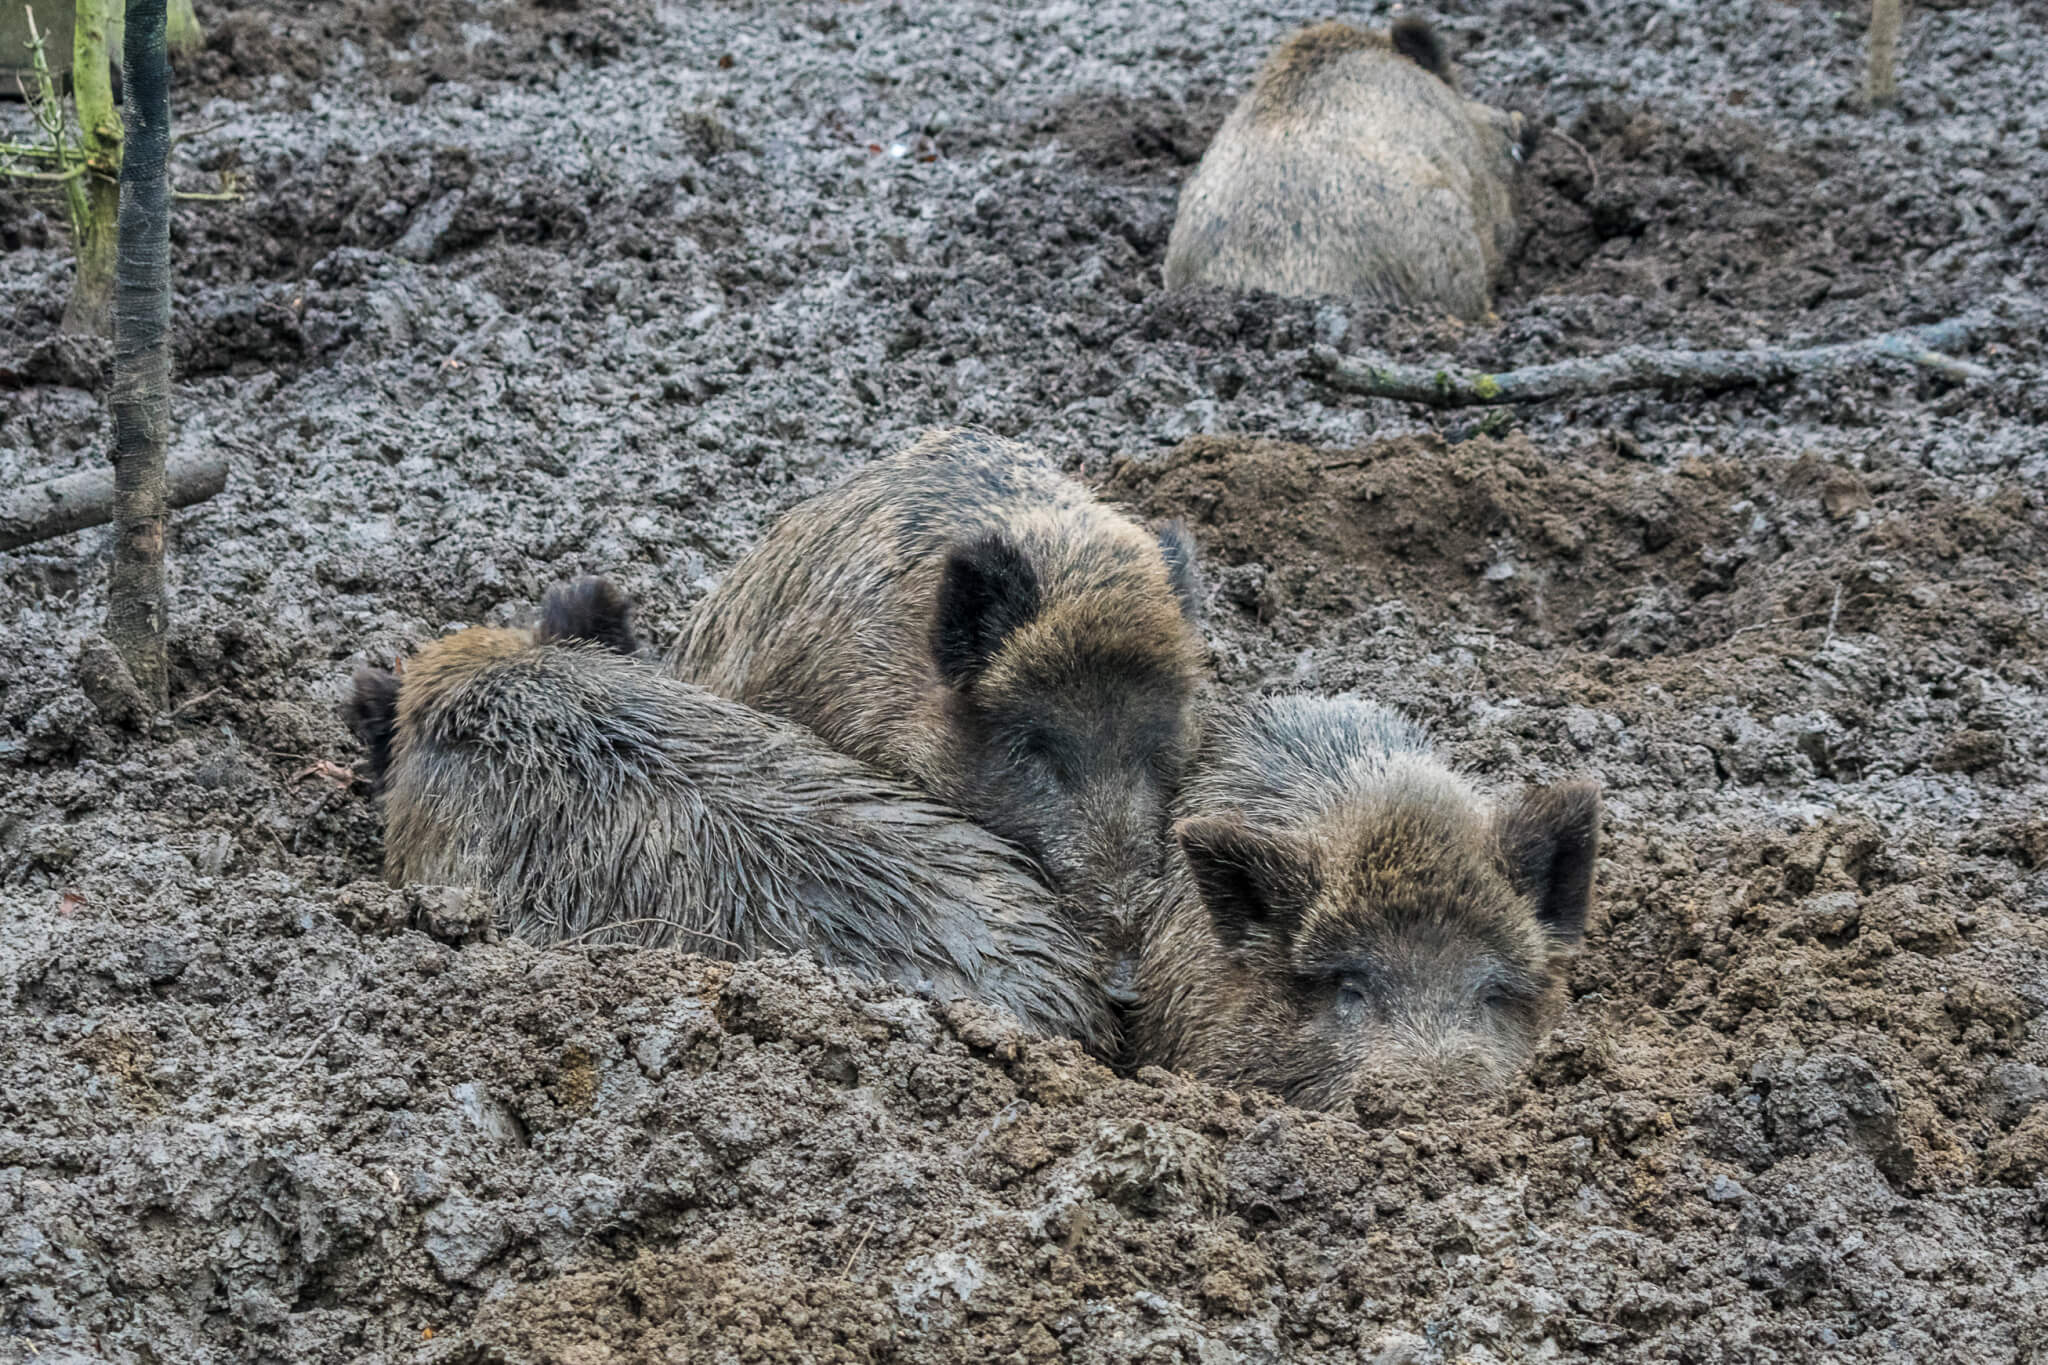 Wildschwein kuscheln - Wildschwein, Wisentgehege, Animal, Tiere